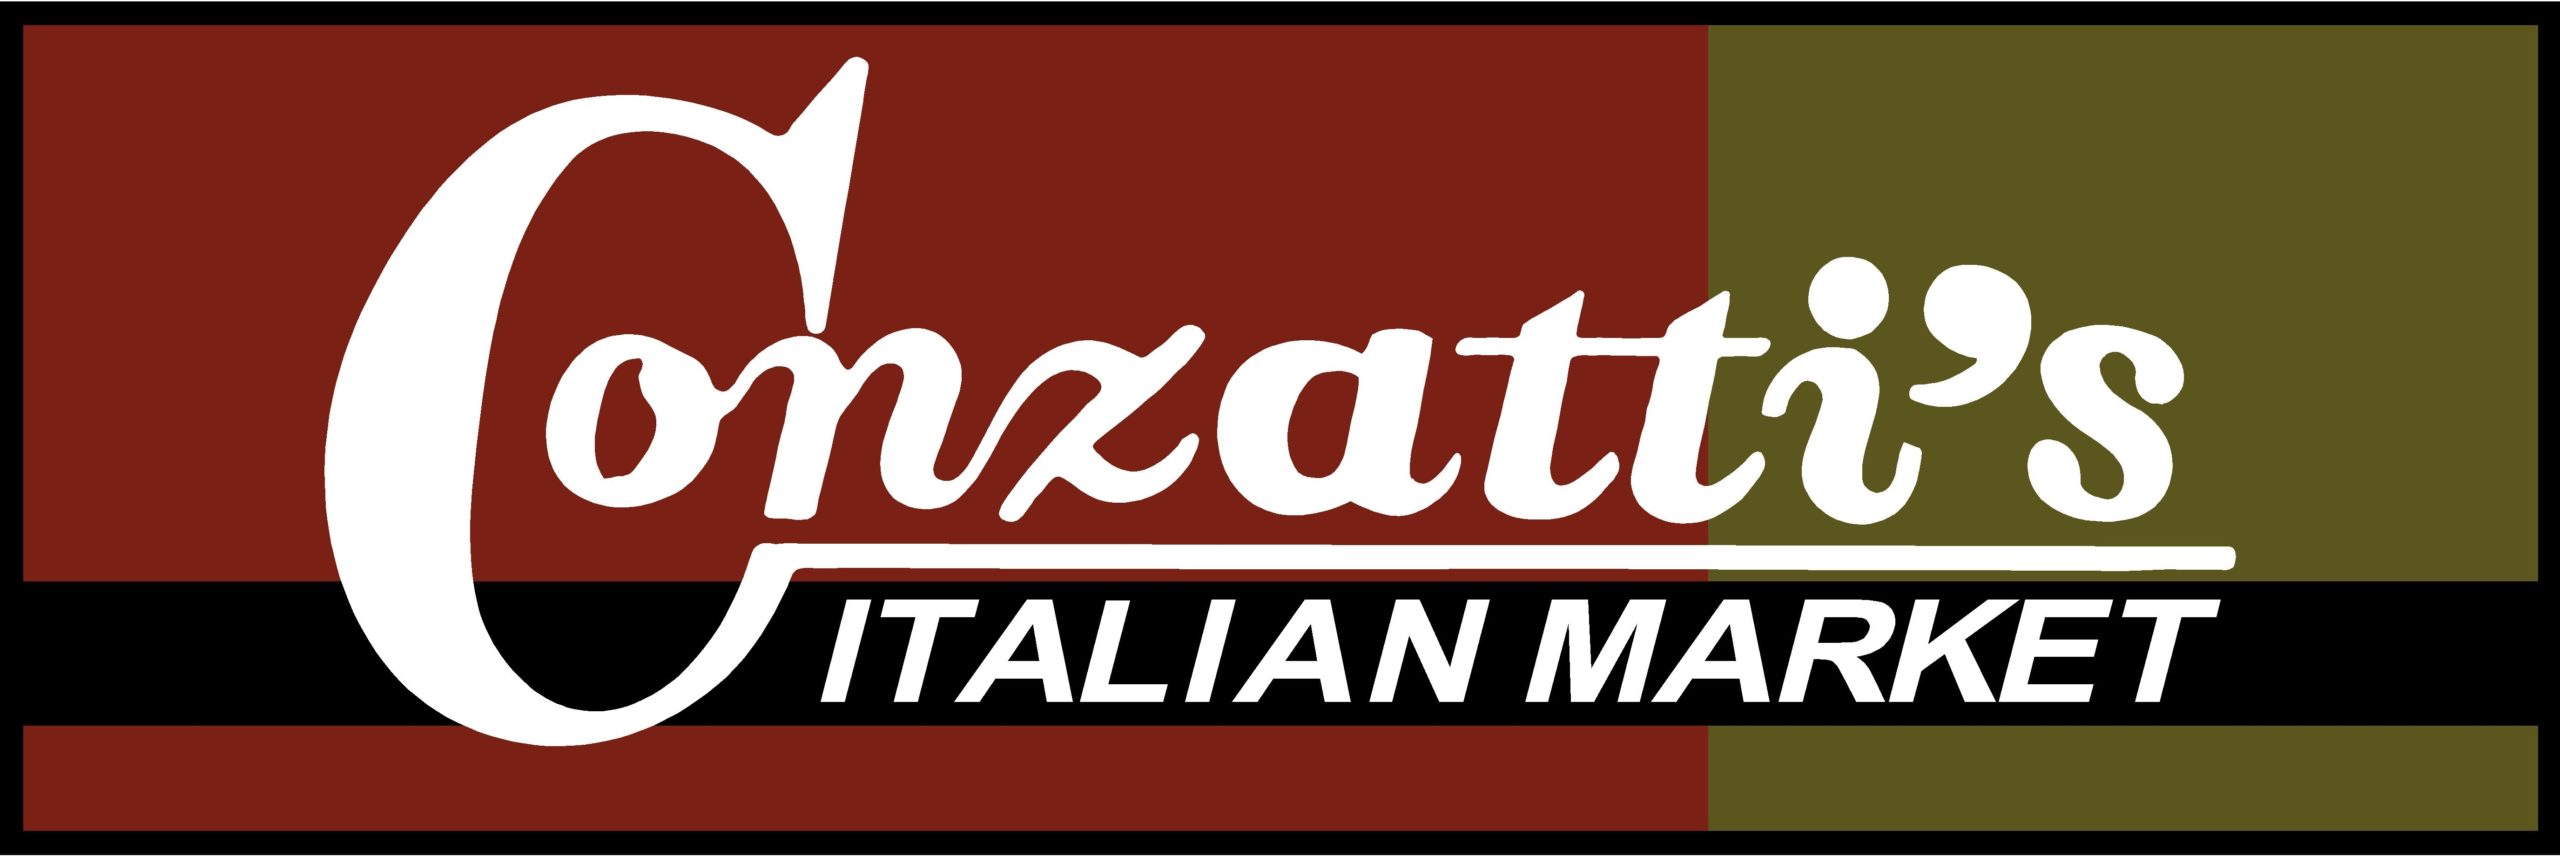 Conzatti’s Italian Market